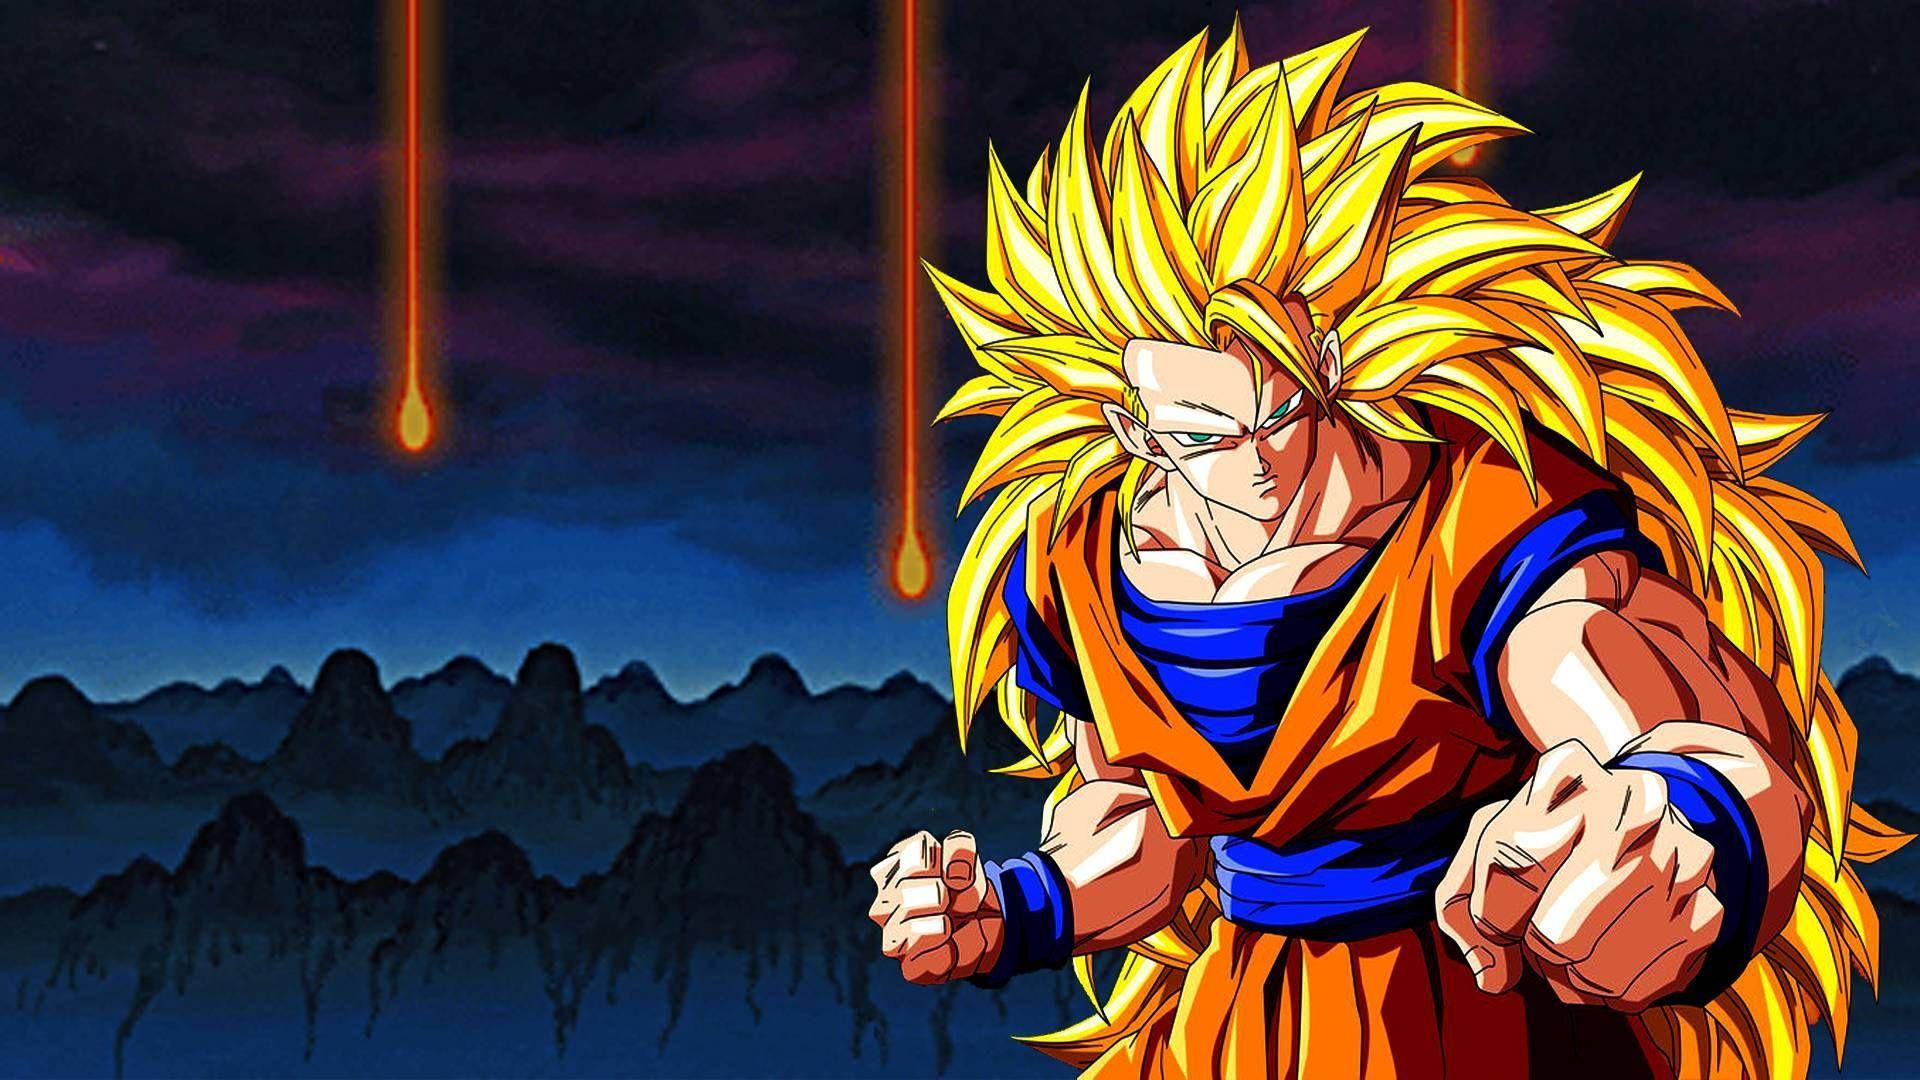 "Goku unleashes his power during an intense battle." Wallpaper